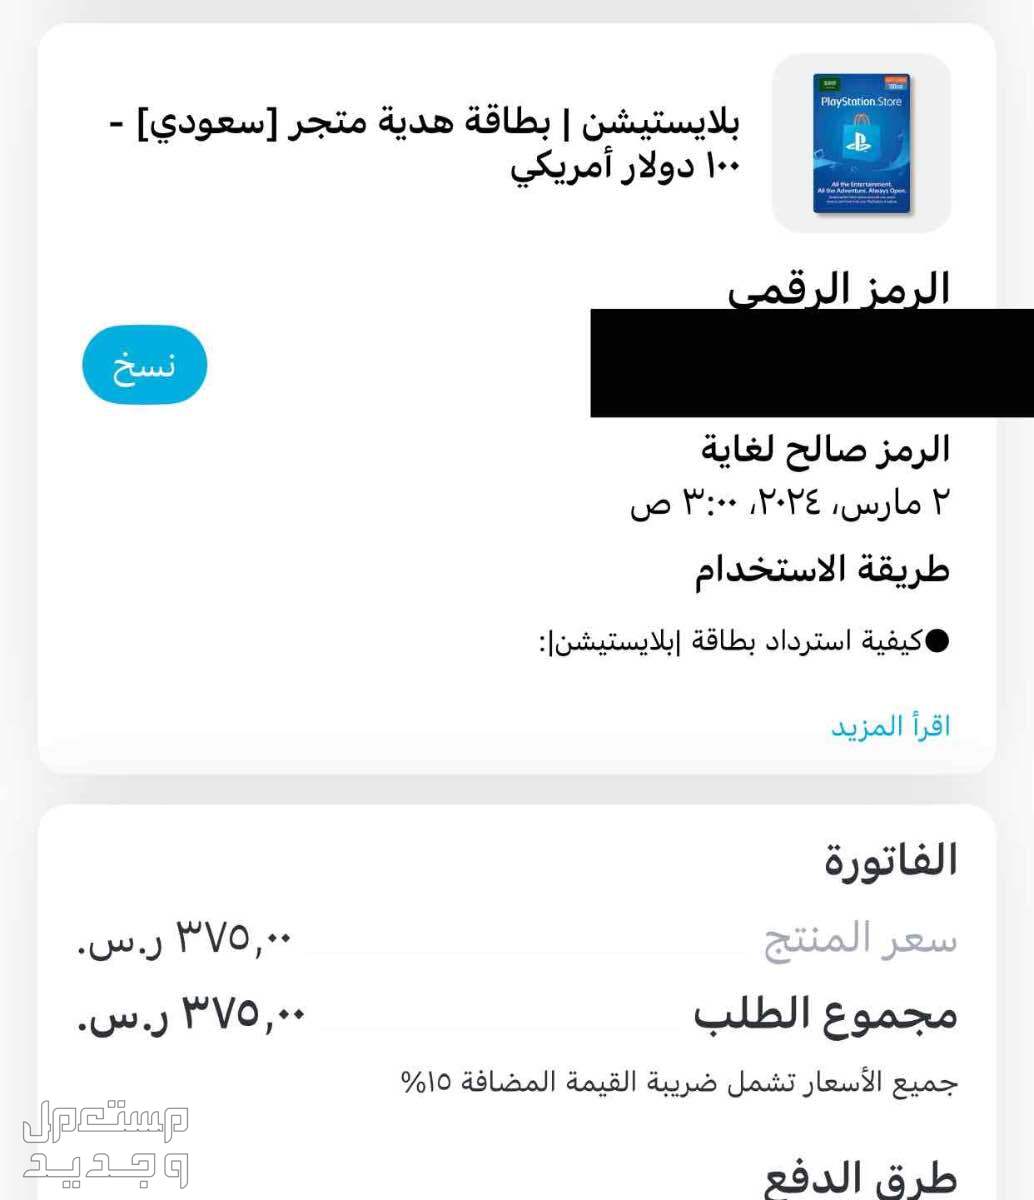 ستور سعودي 100 دولار المبلغ الاساسي للبطاقة الرقمية